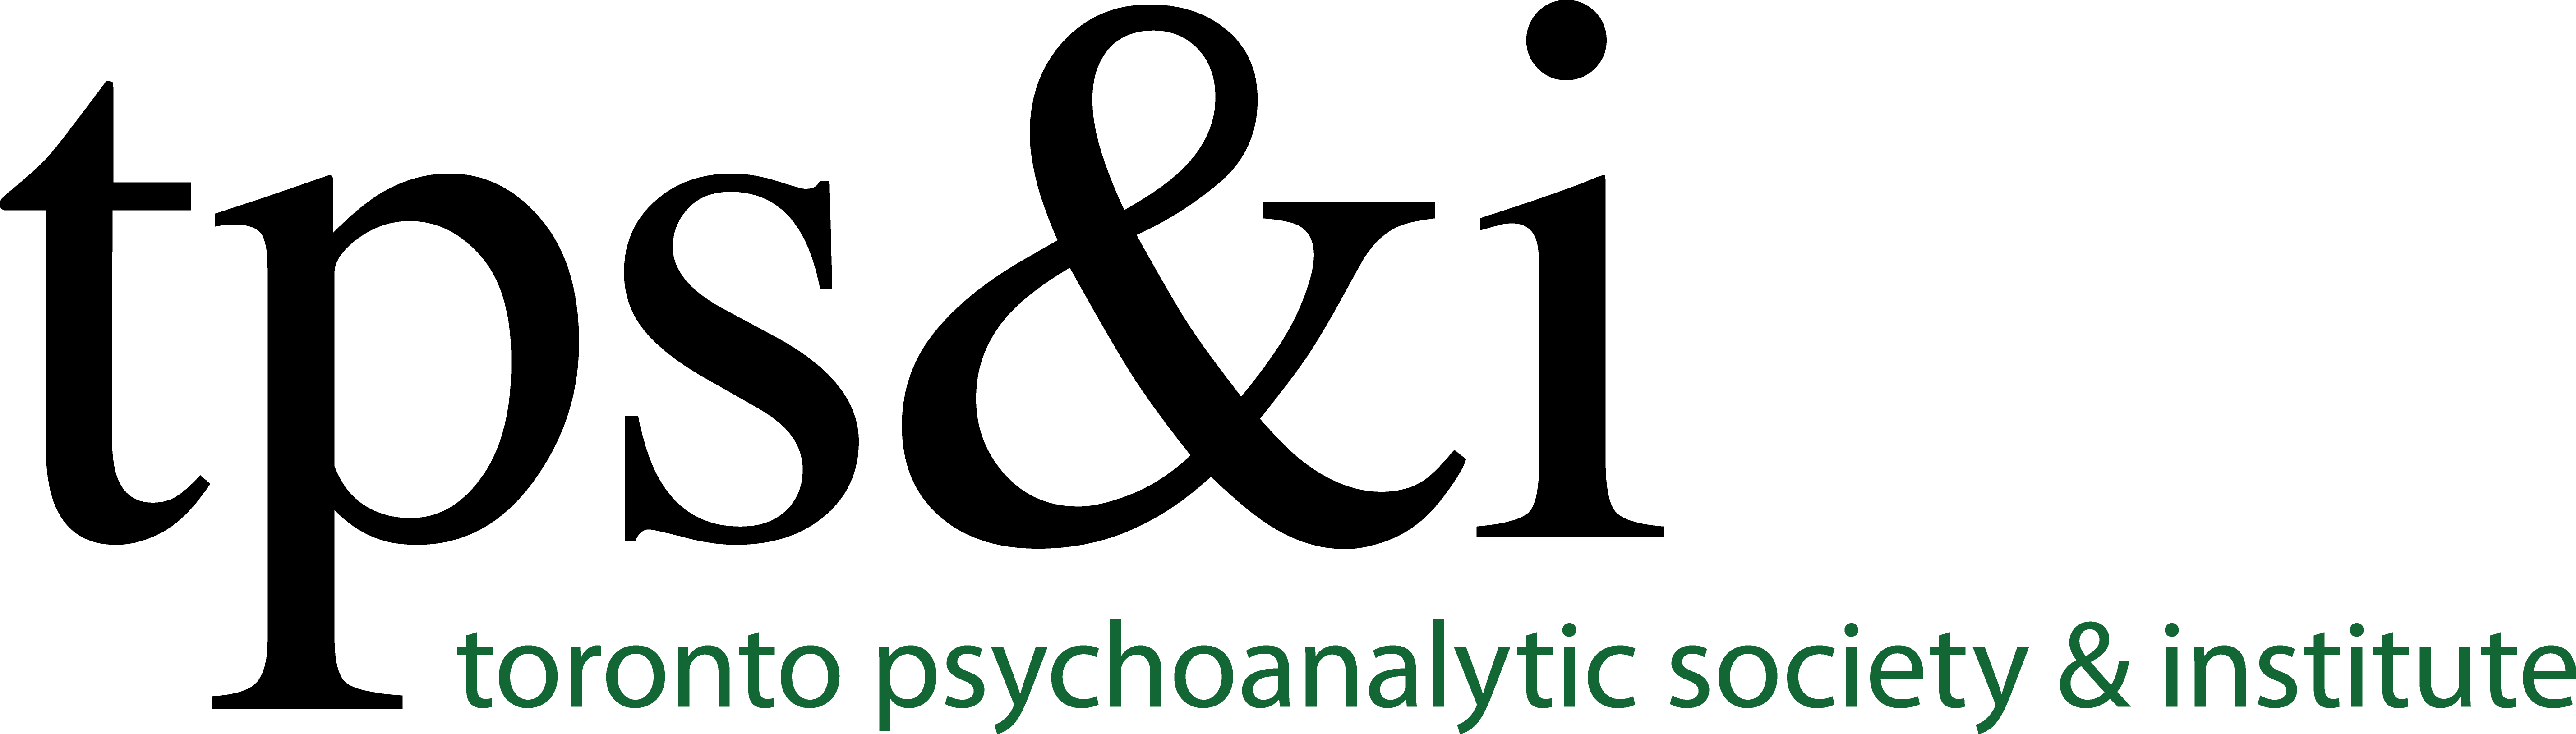 Toronto Psychoanalytic Society & Institute